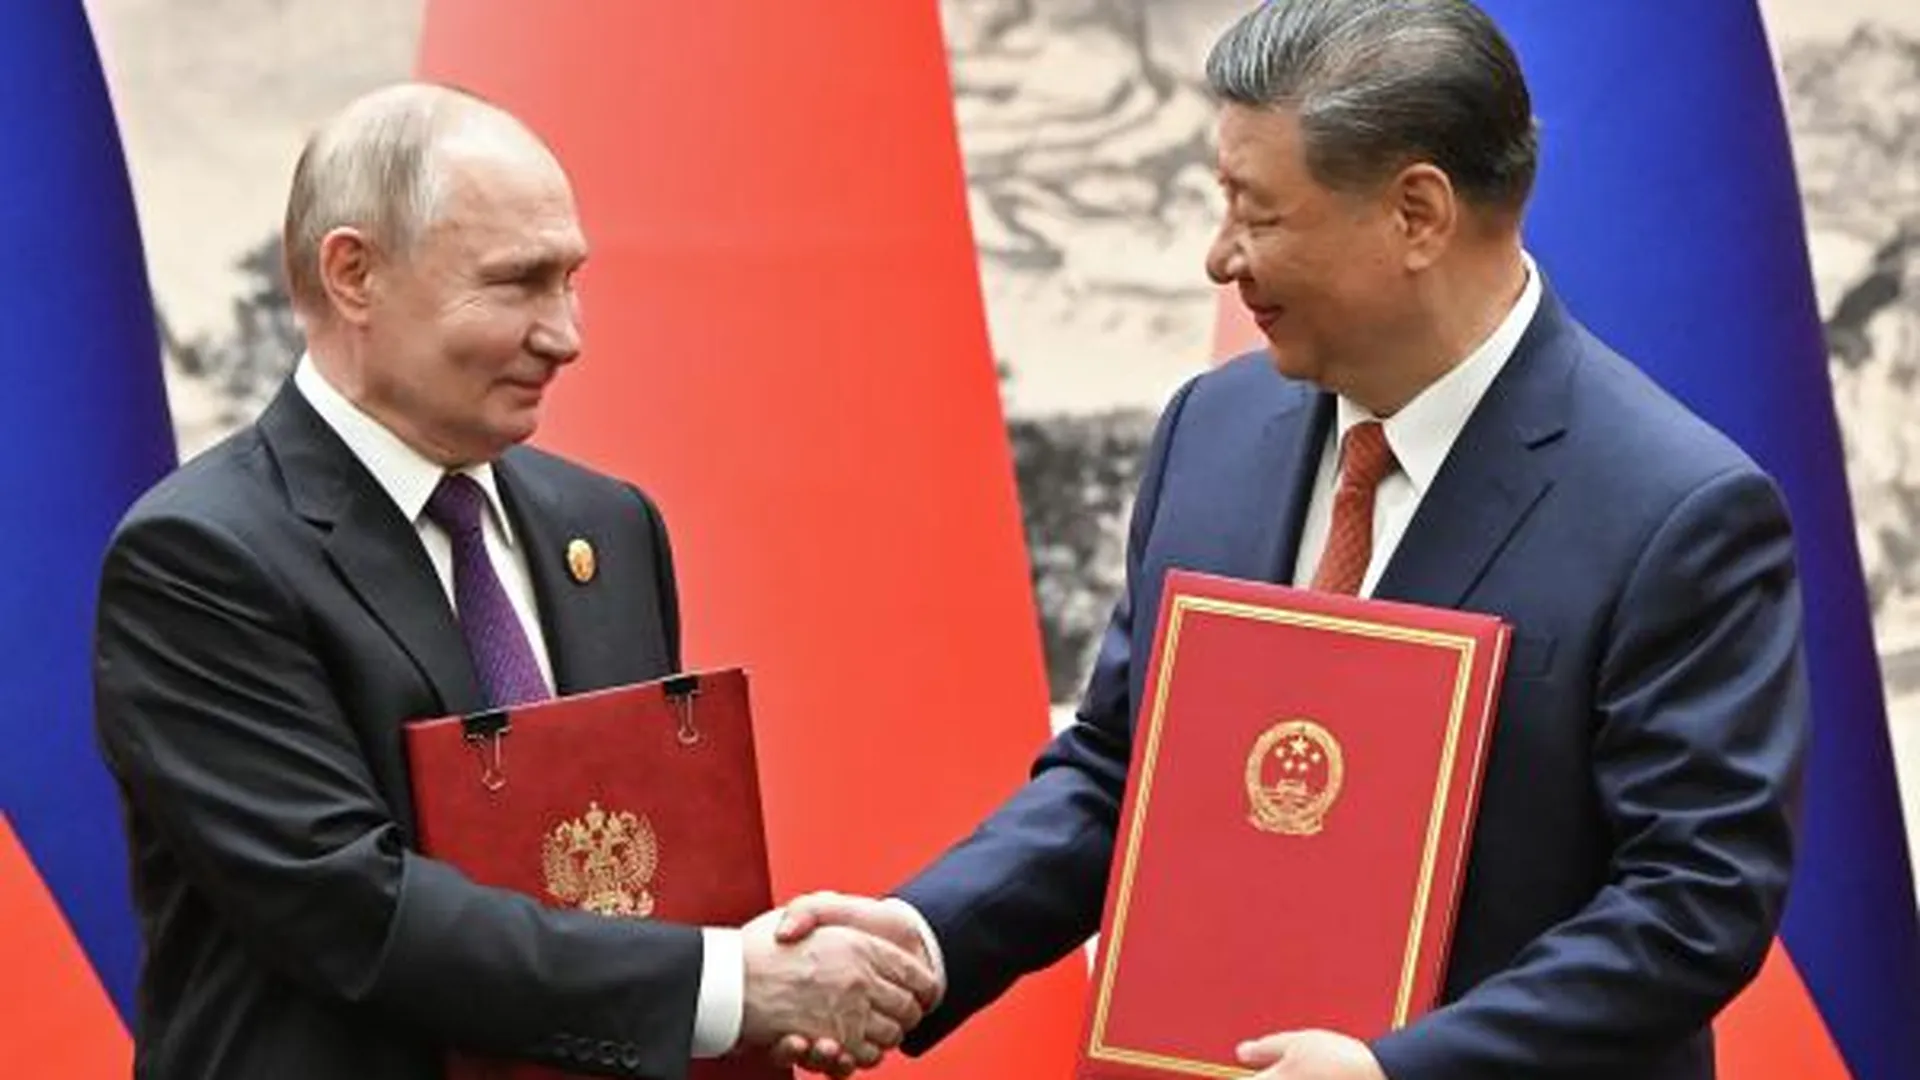 Партнерство России и Китая повысит уровень благосостояния народов — Путин